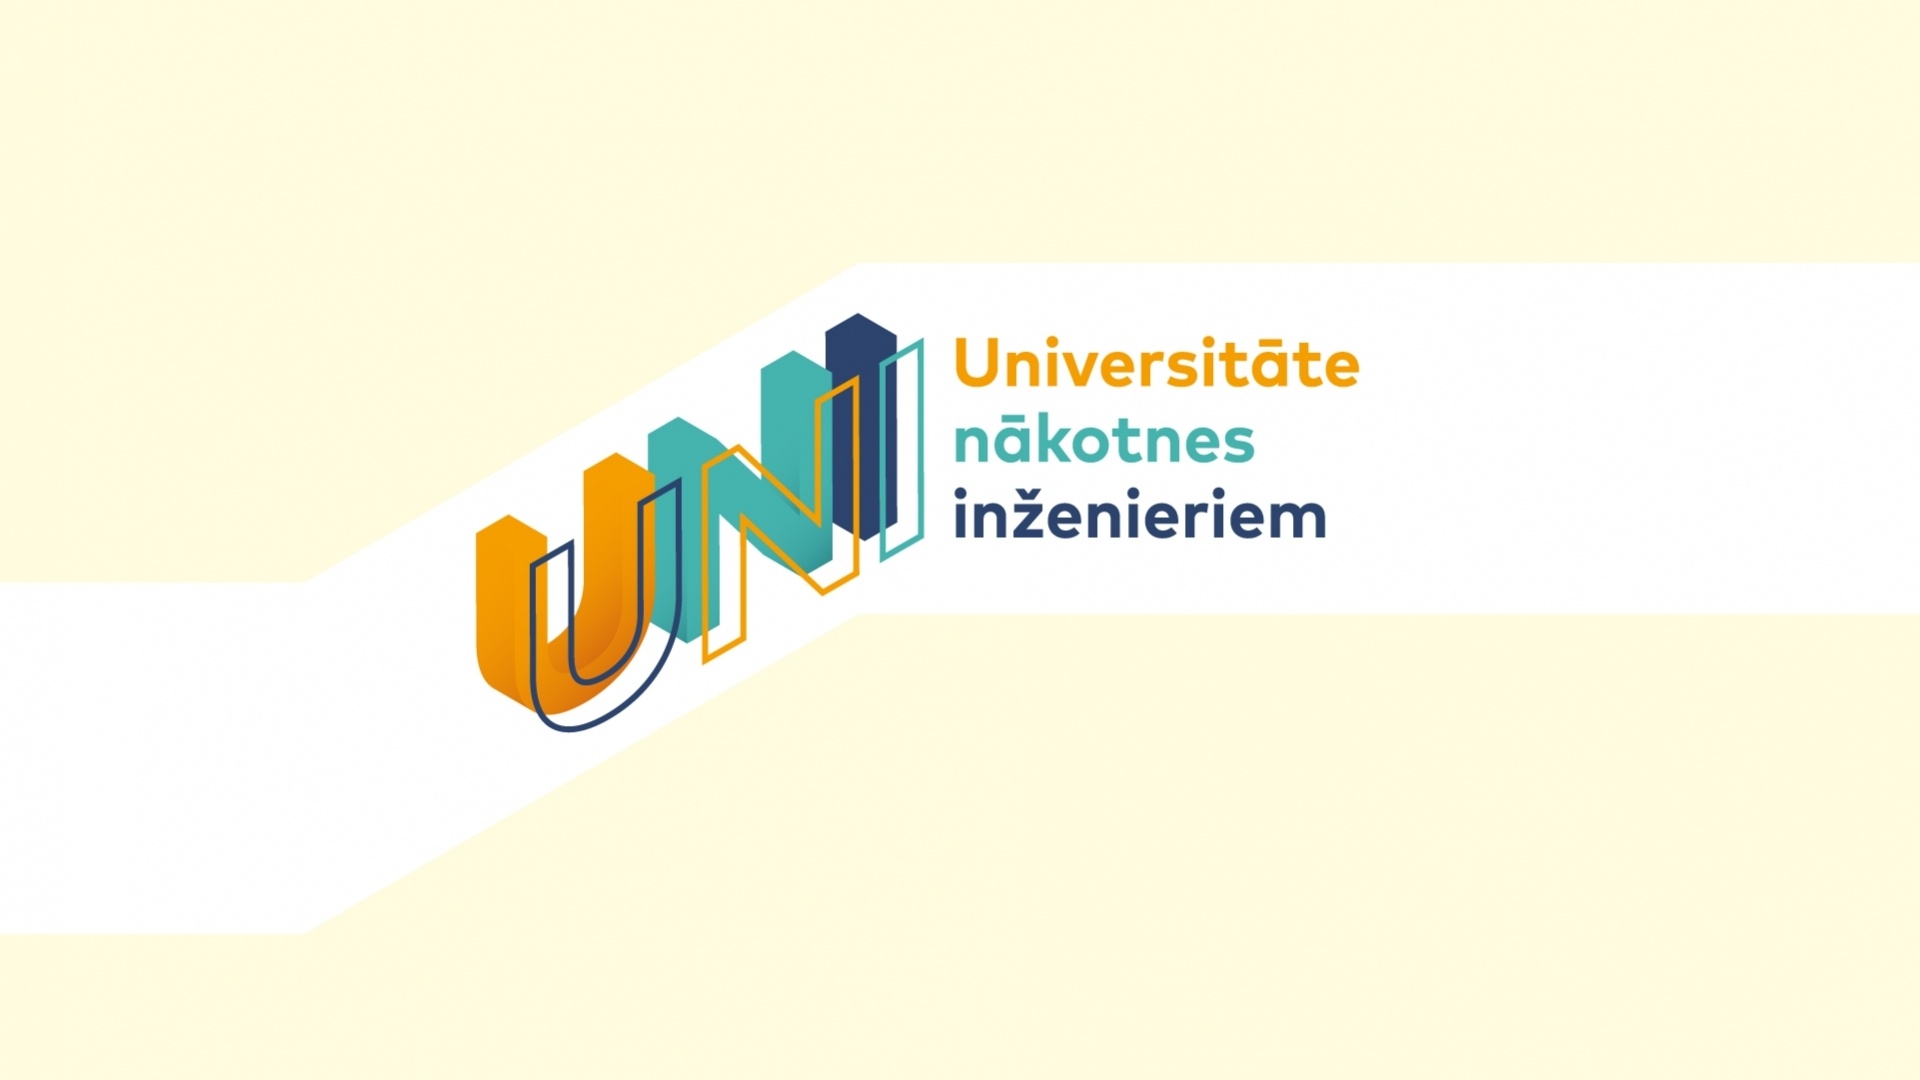 «Universitāte nākotnes inženieriem» iepazīstinās ar RTU Arhitektūras fakultāti